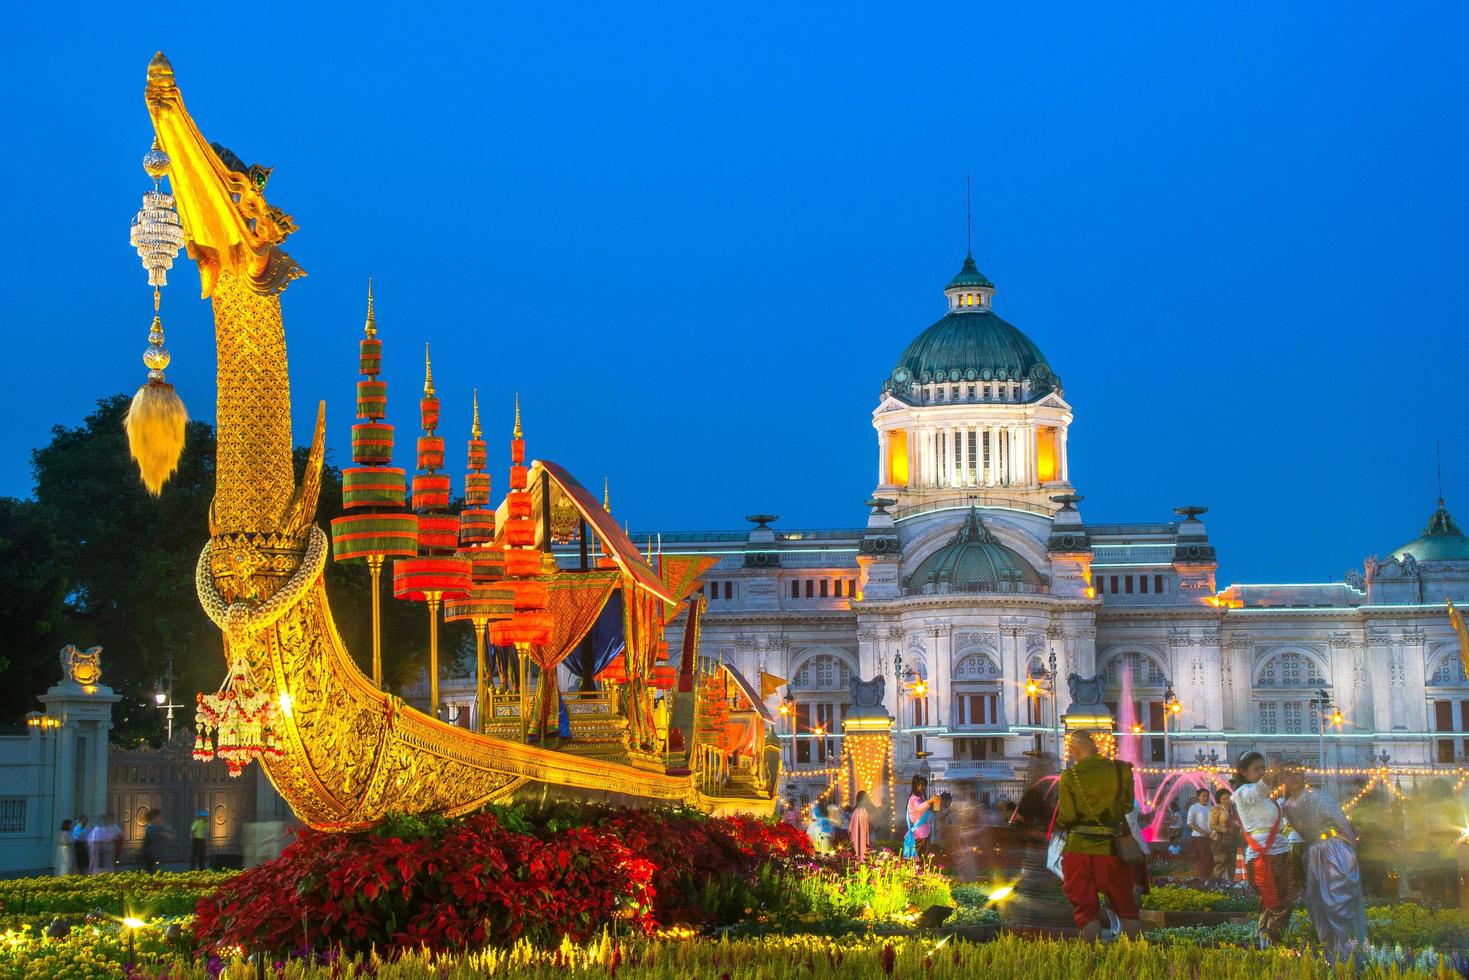 bangkok, tailândia - 24 de dezembro de 2018 - réplica da barca real suphannahong na feira de inverno aun ai rak khlai khwam nao na praça real, praça do palácio dusit ou praça da estátua equestre foto